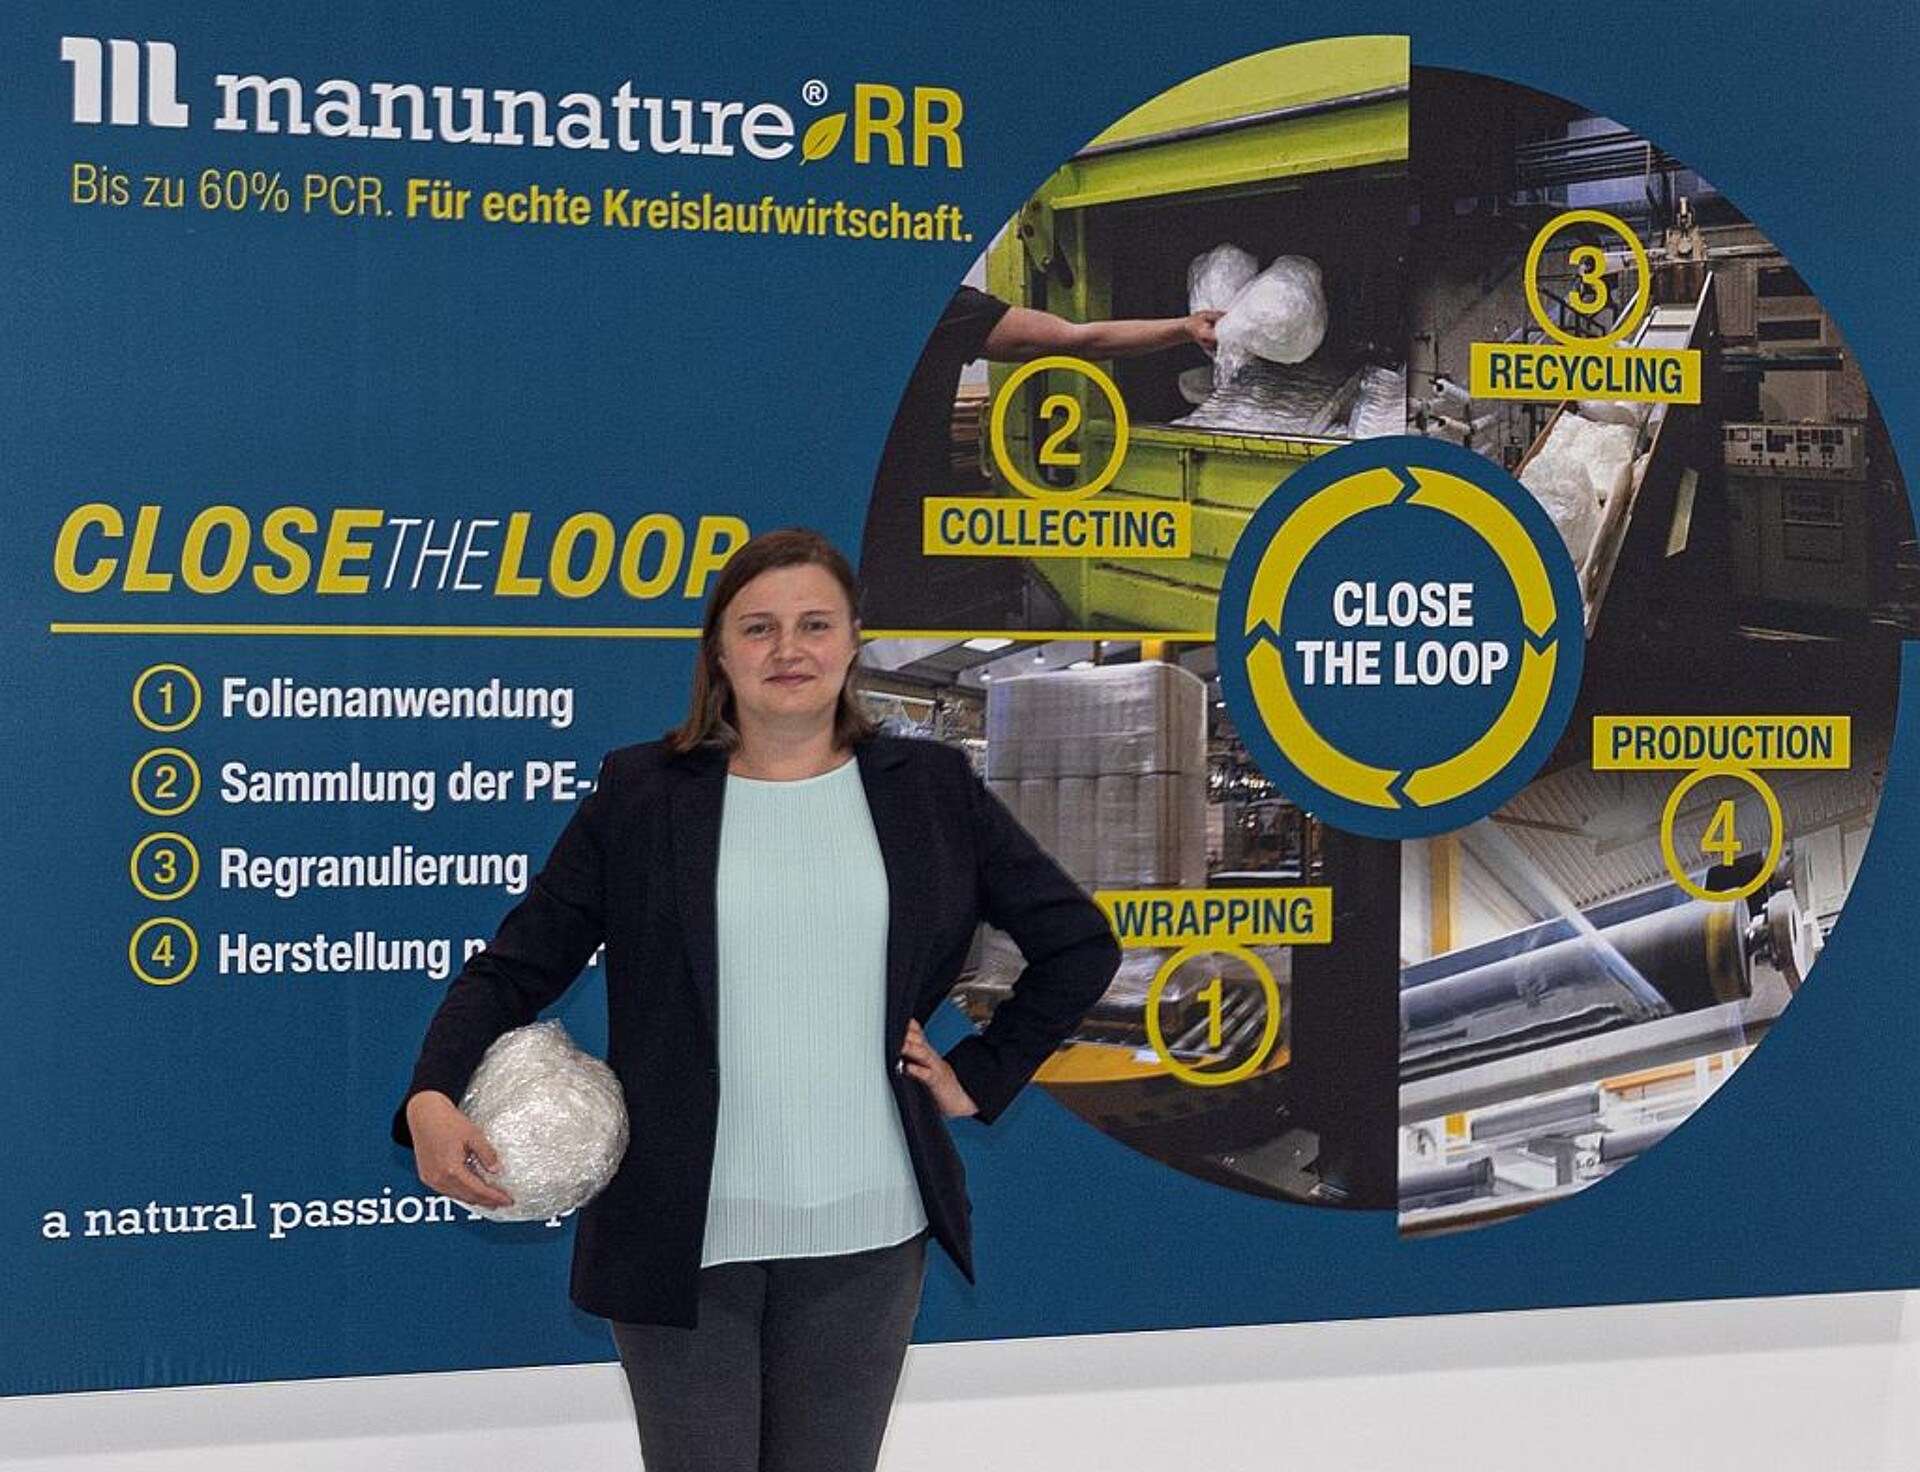 Dr. Isabell Stolte sieht für Unternehmen große Anreize, am Recyclingprogramm teilzunehmen. (Foto: Manupackaging)